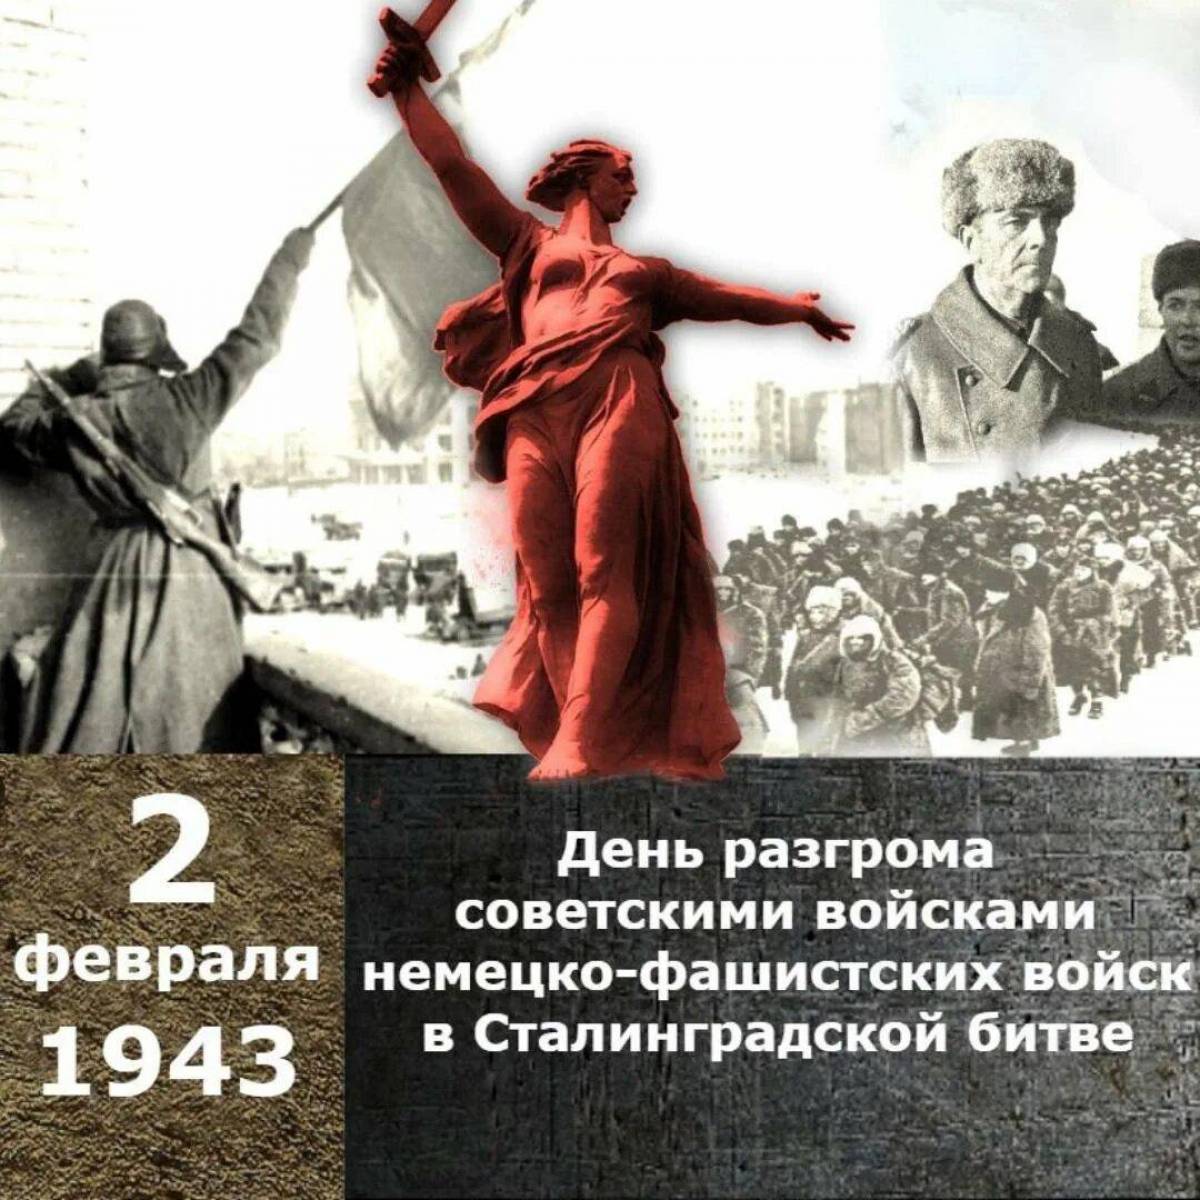 Ко дню сталинградской битвы #21